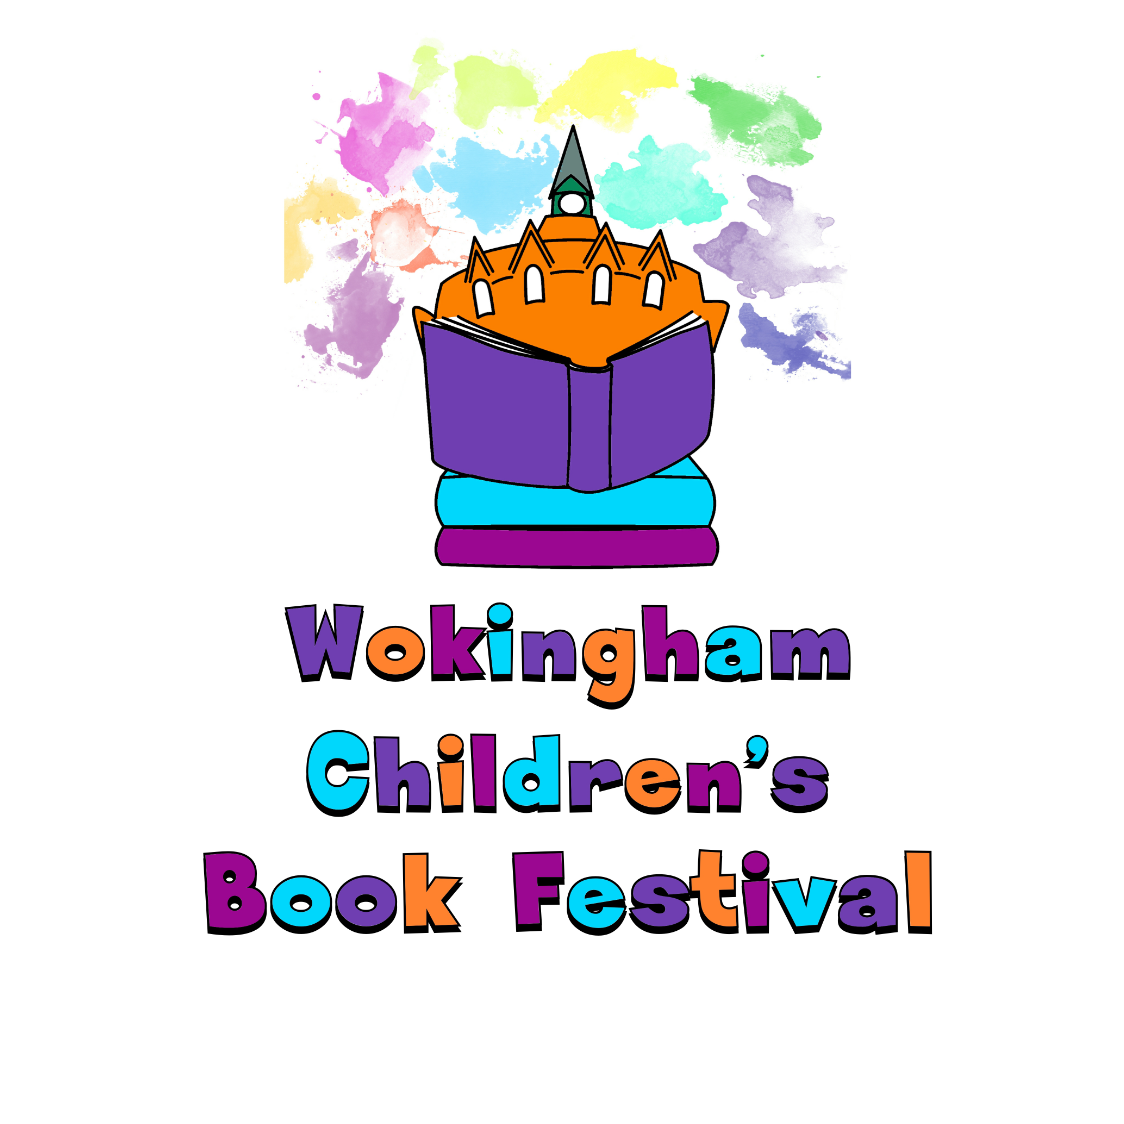 Wokingham Children's Book Festival